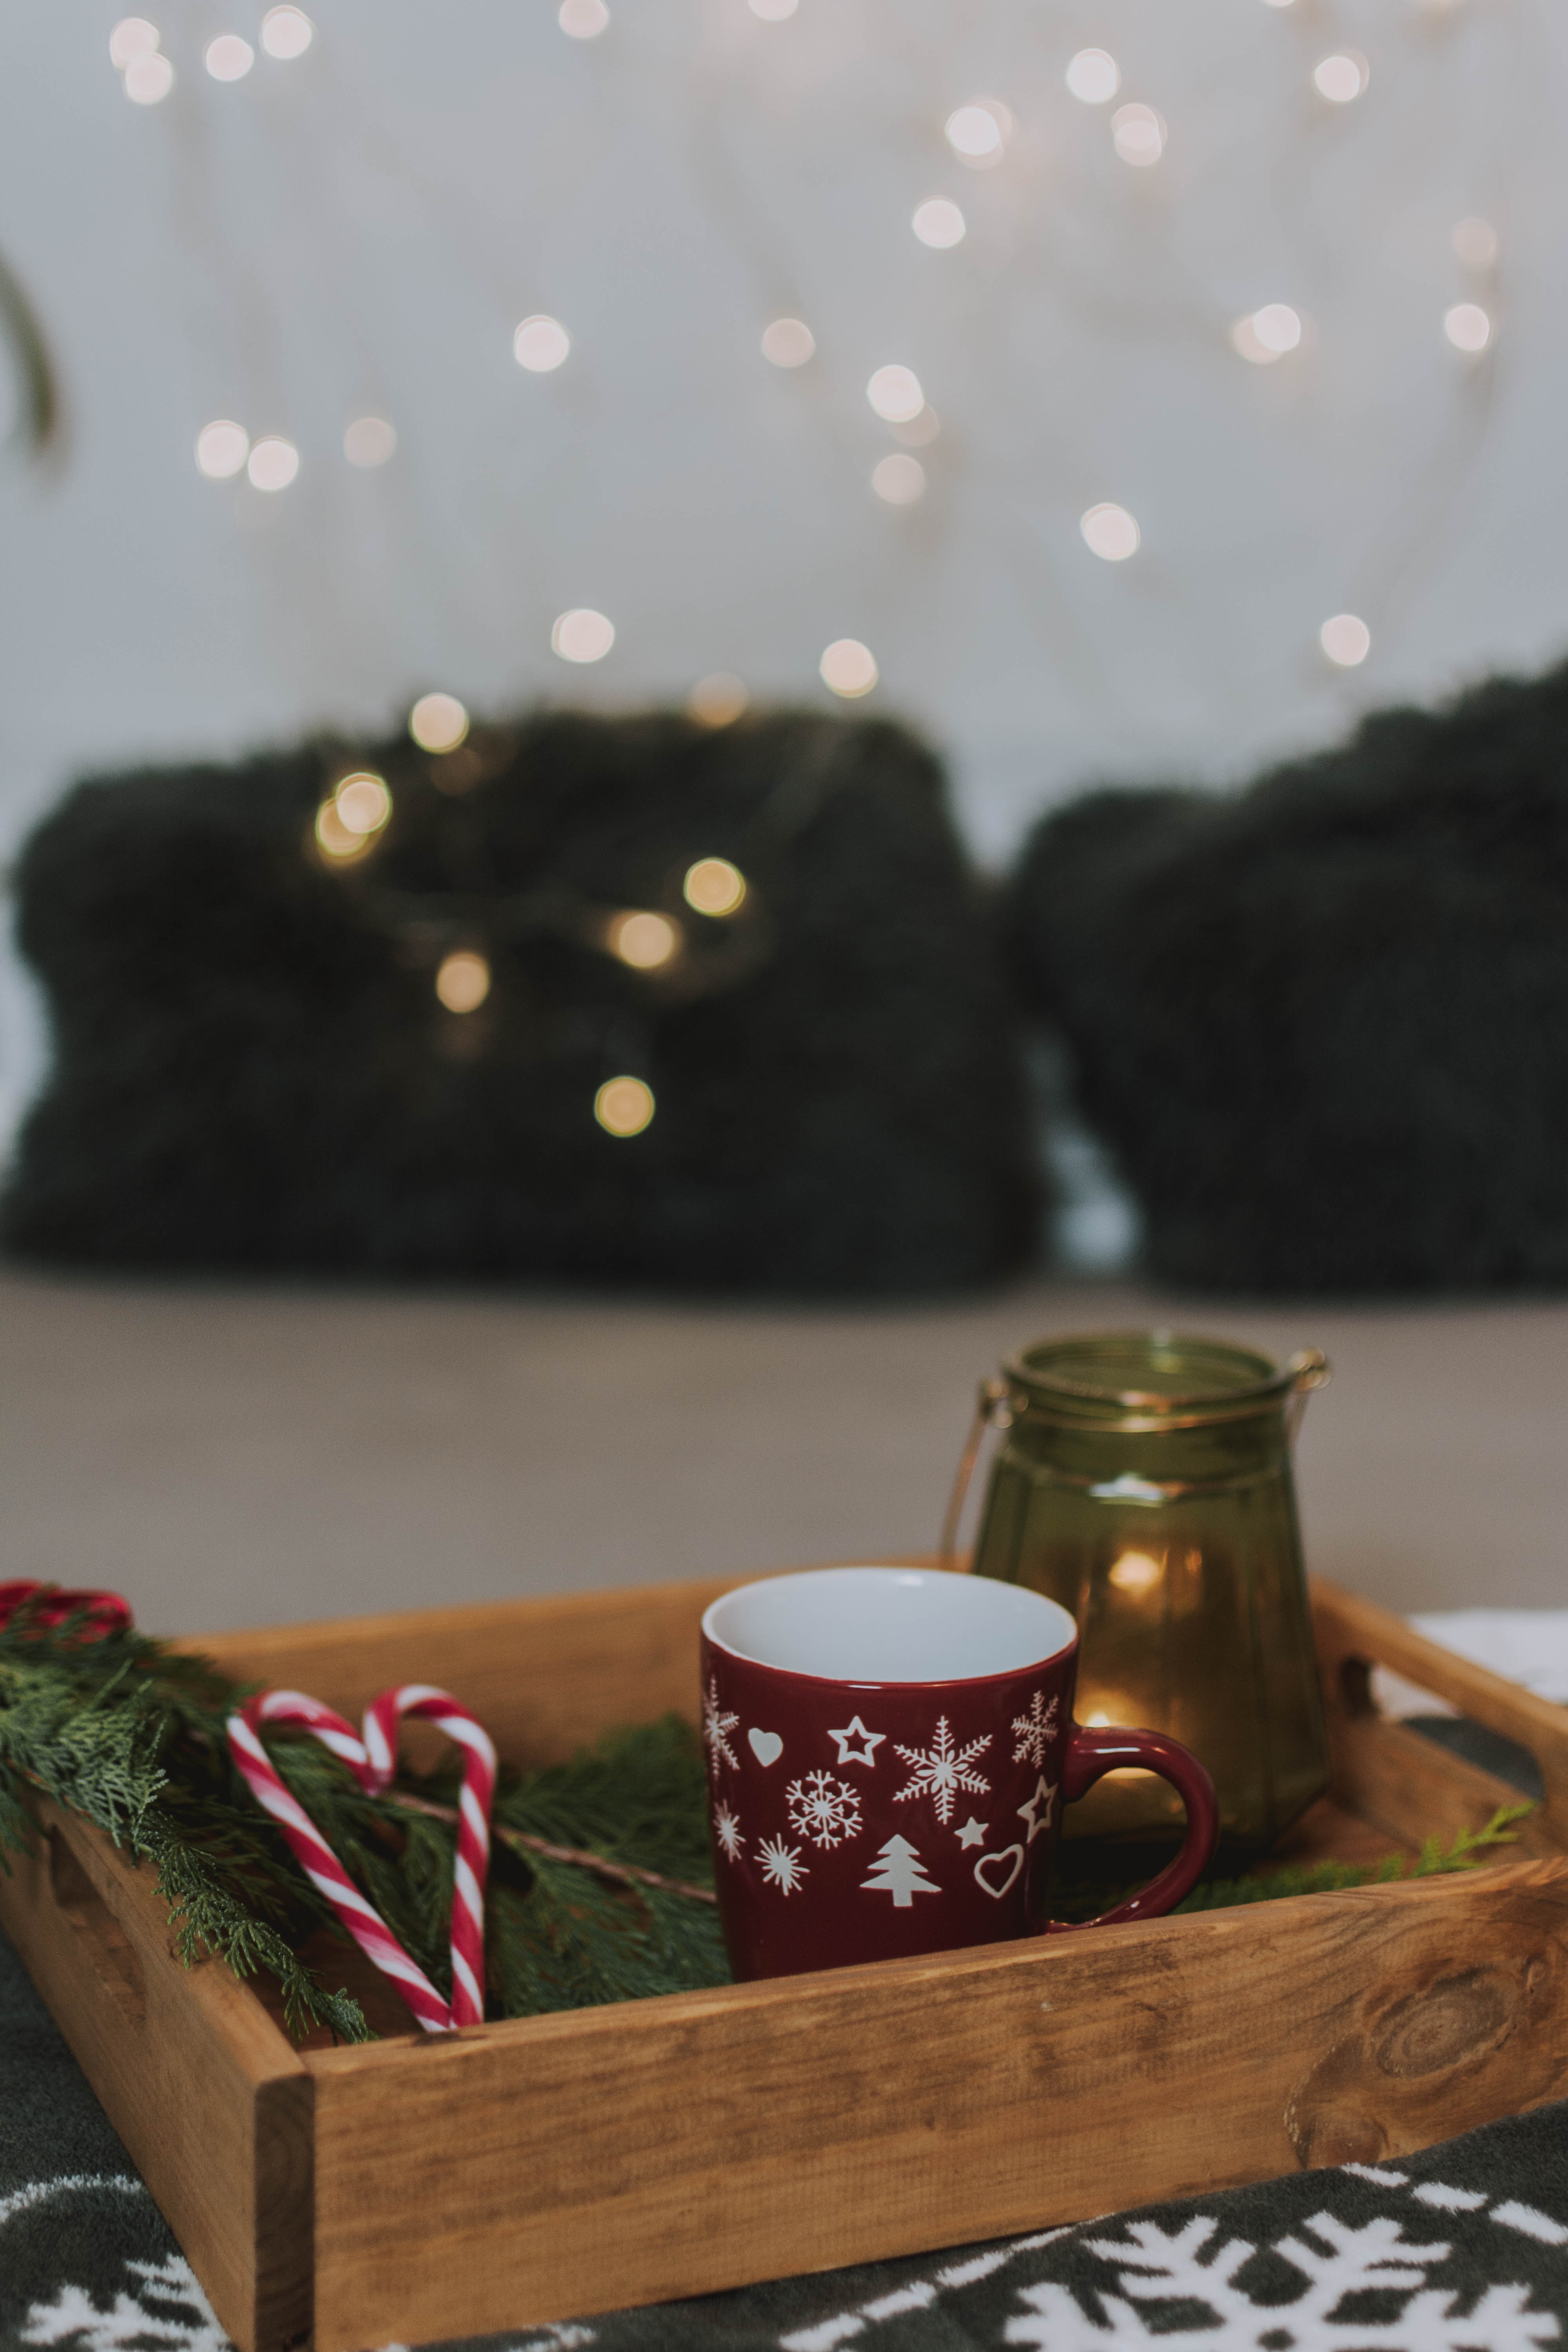 mug, holidays, new year, candies, cup, christmas, box, christmas tree